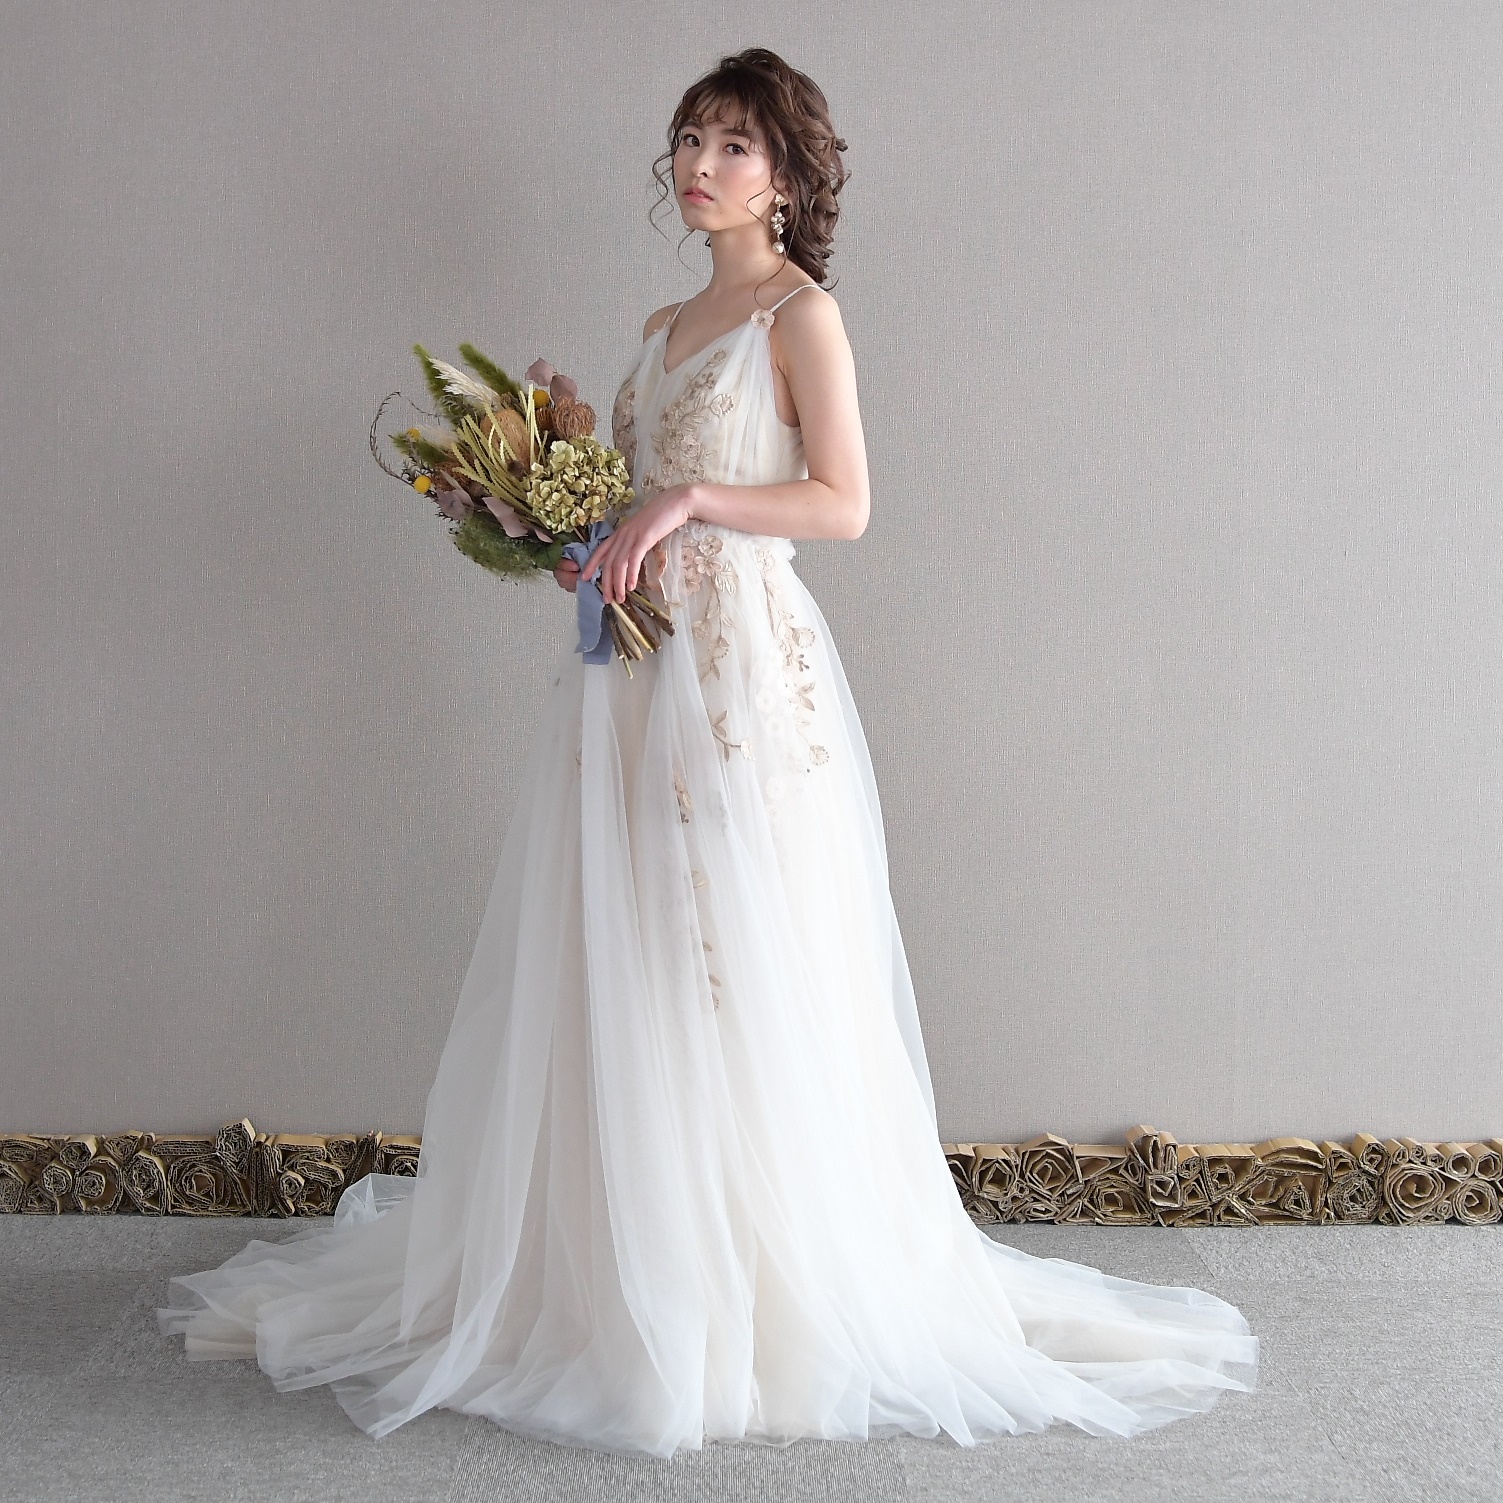 ドレスプロダクション前撮りドレス 結婚式 ドレス dressproduction - nimfomane.com